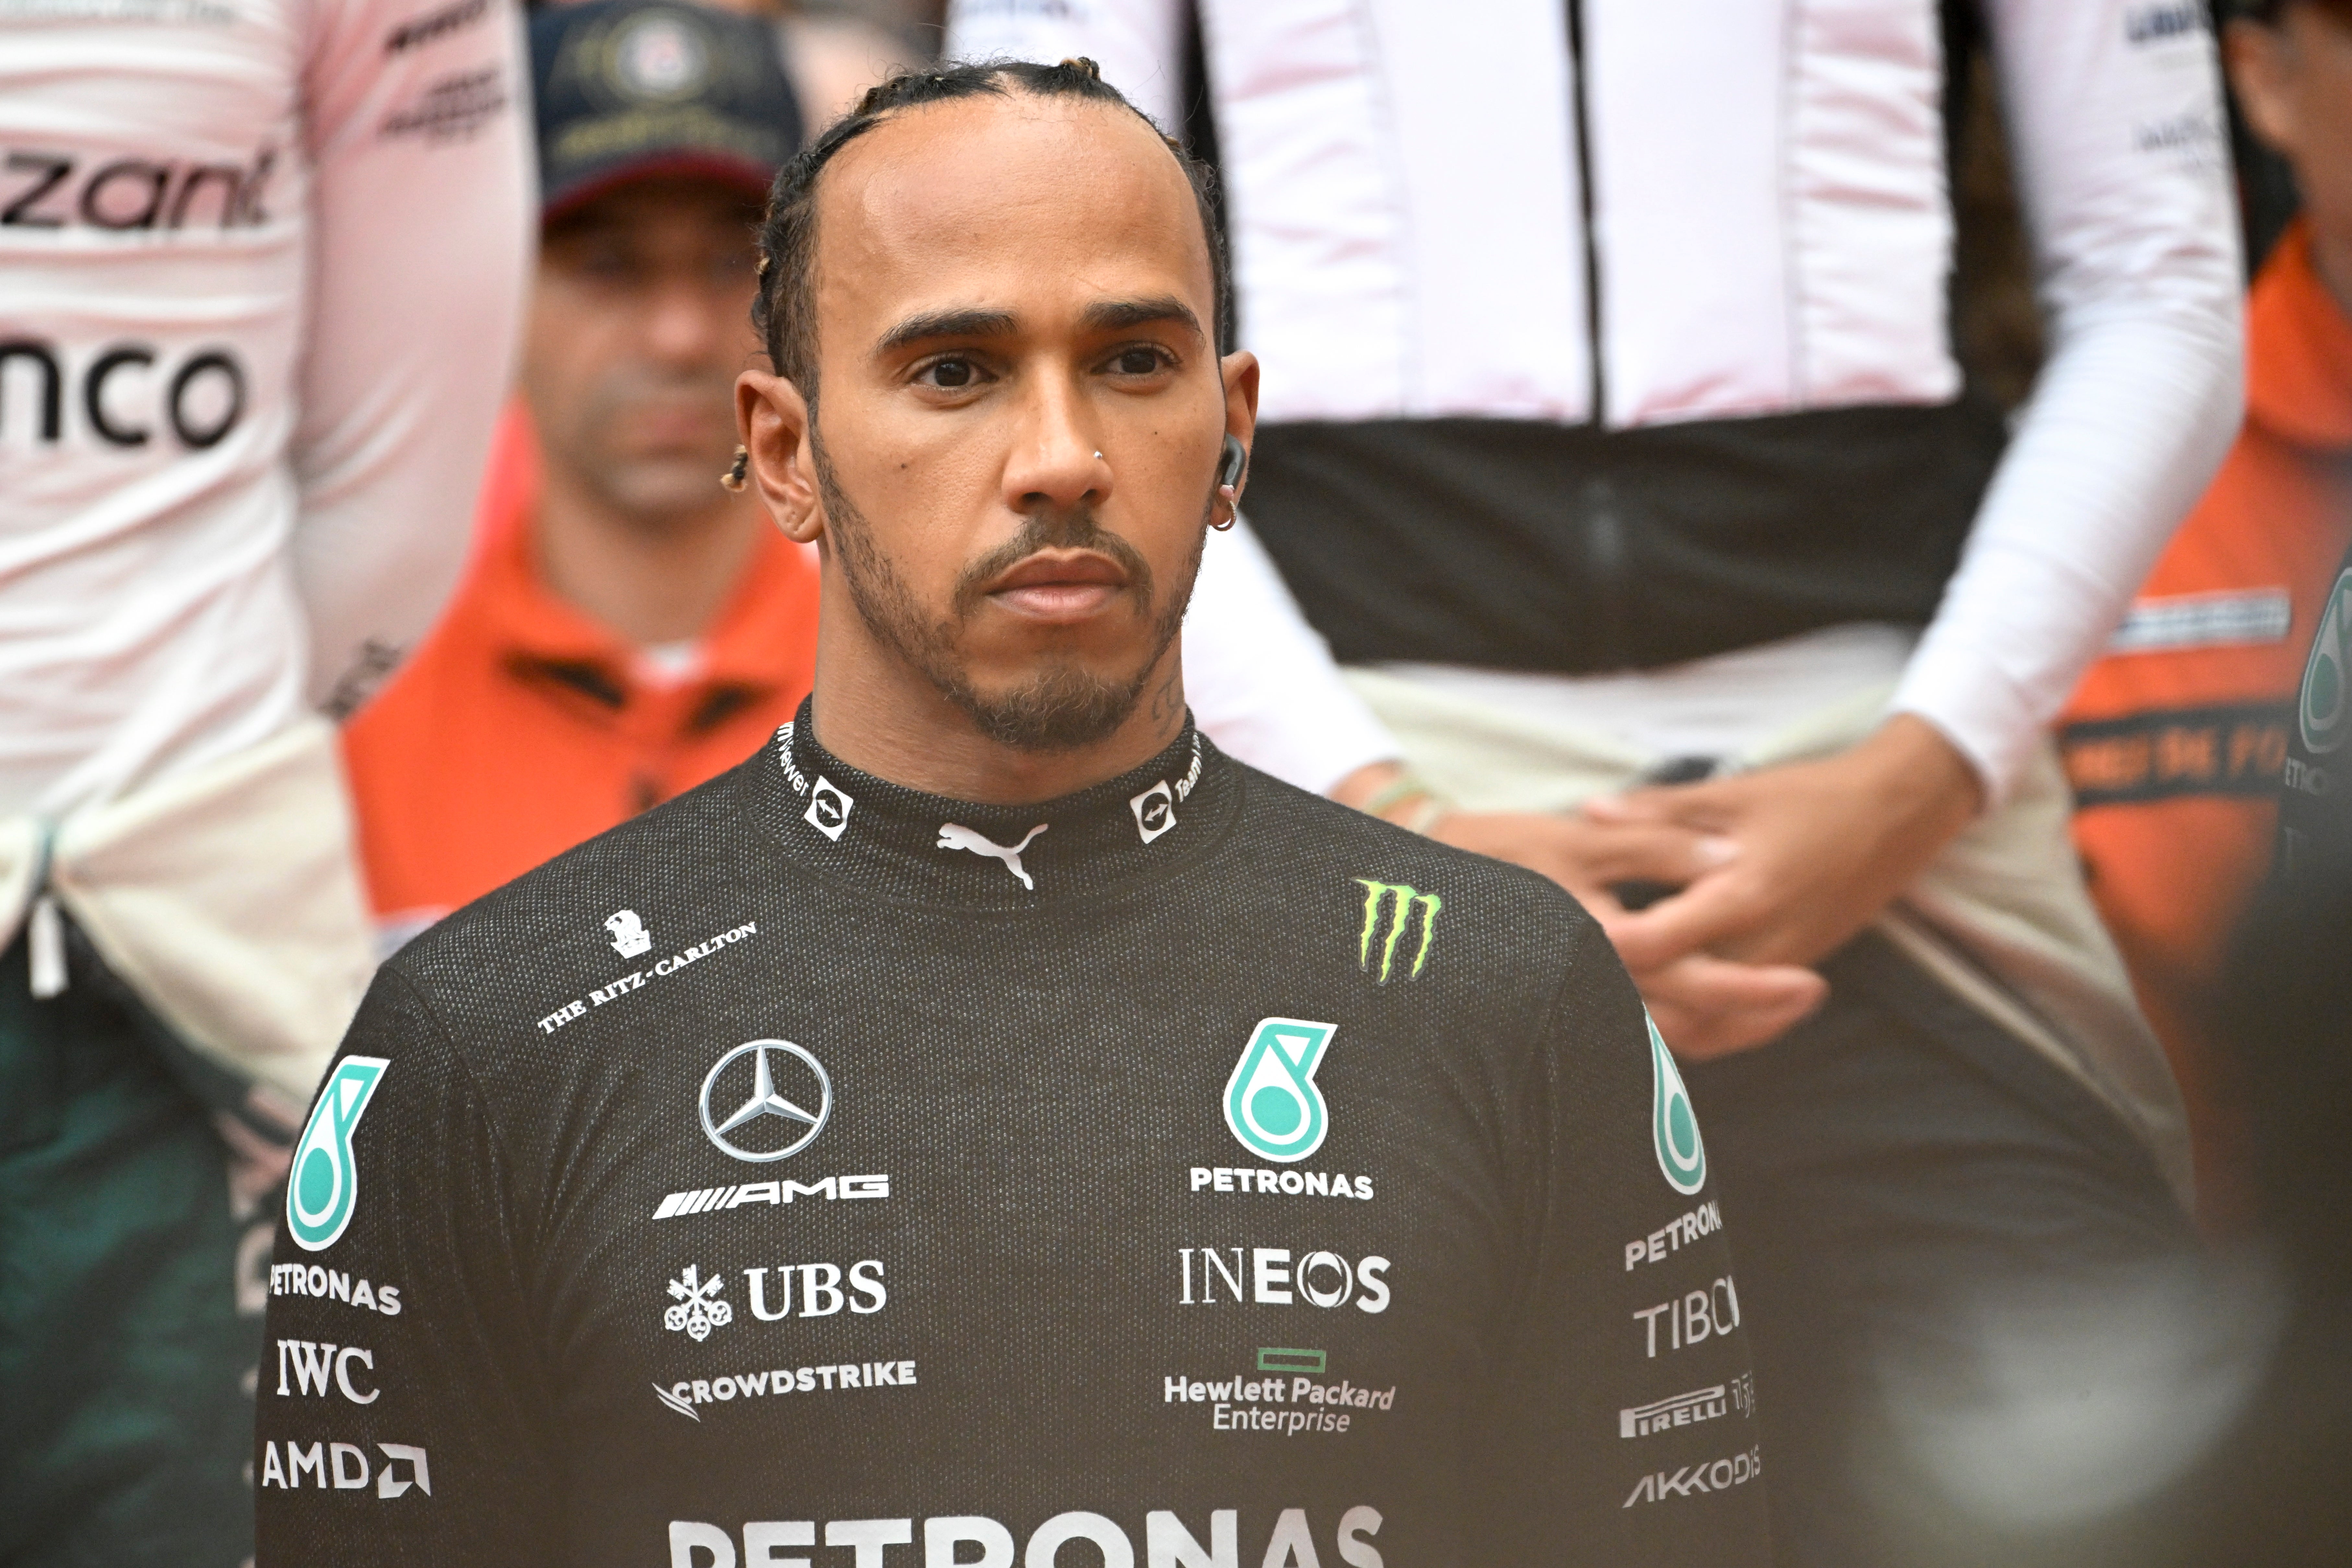 Lewis Hamilton has struggled this season